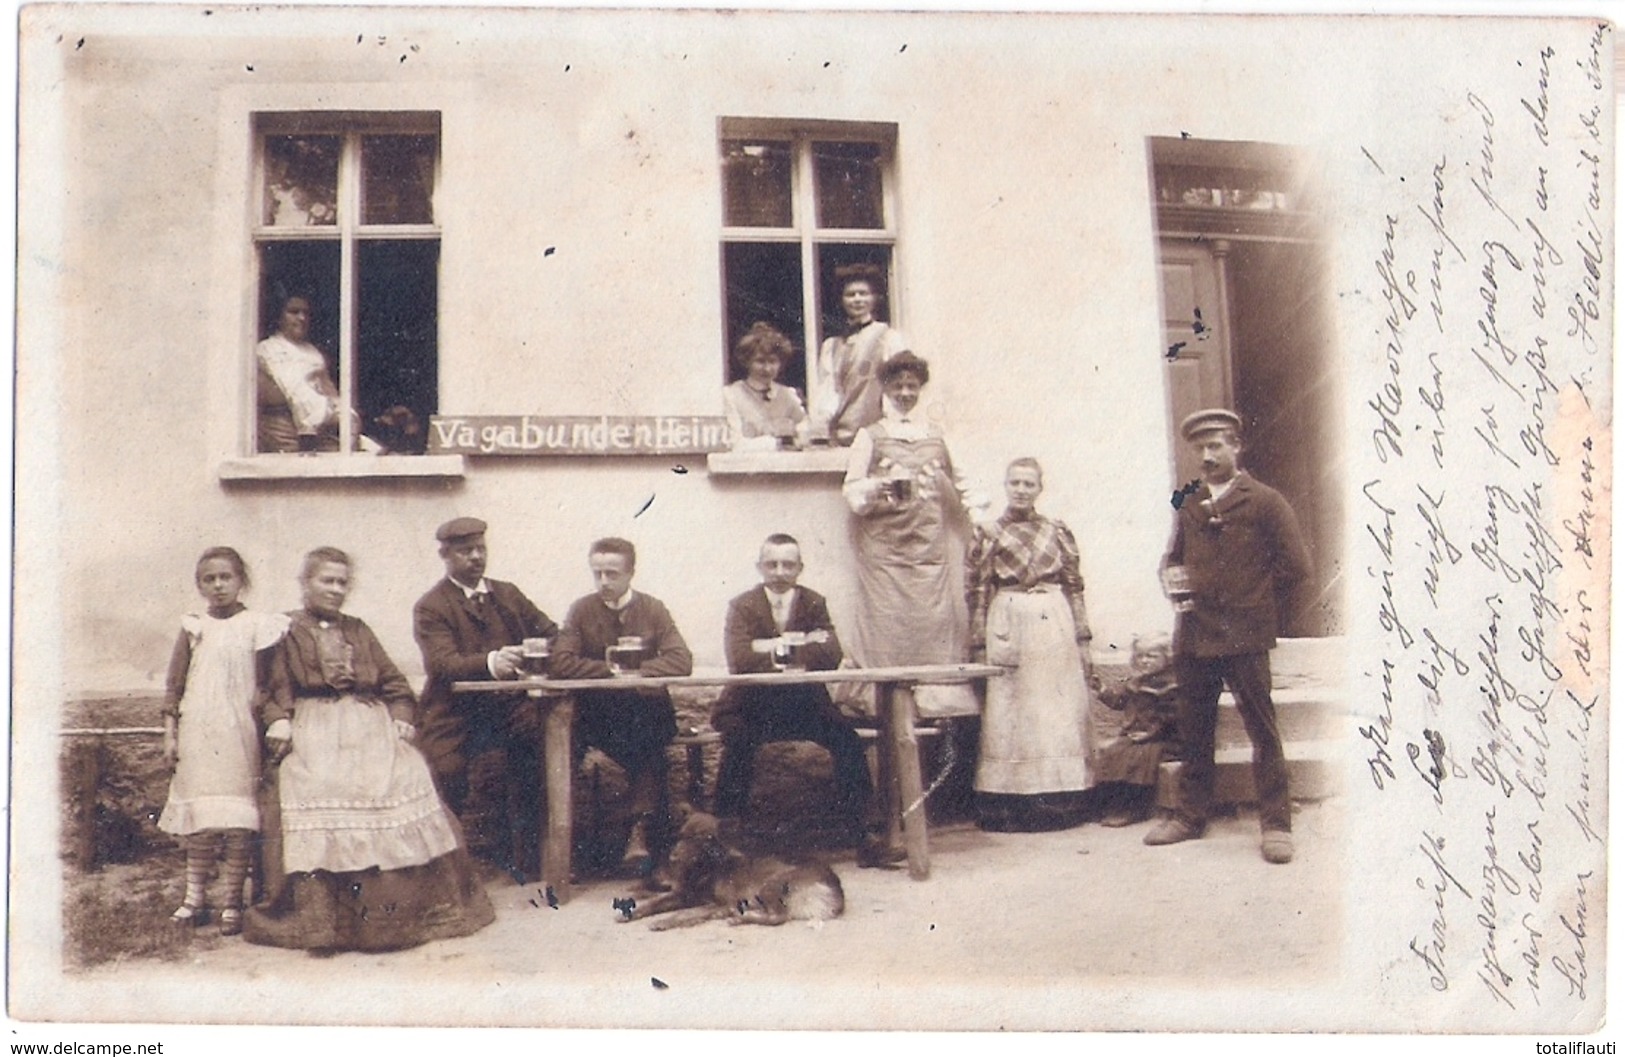 WERLITZSCH Gem Wiedemar Vagabunden Heim Sommerfrischler Versorgung  Unterkunftshaus Original Private Fotokarte 25.7.1906 - Delitzsch